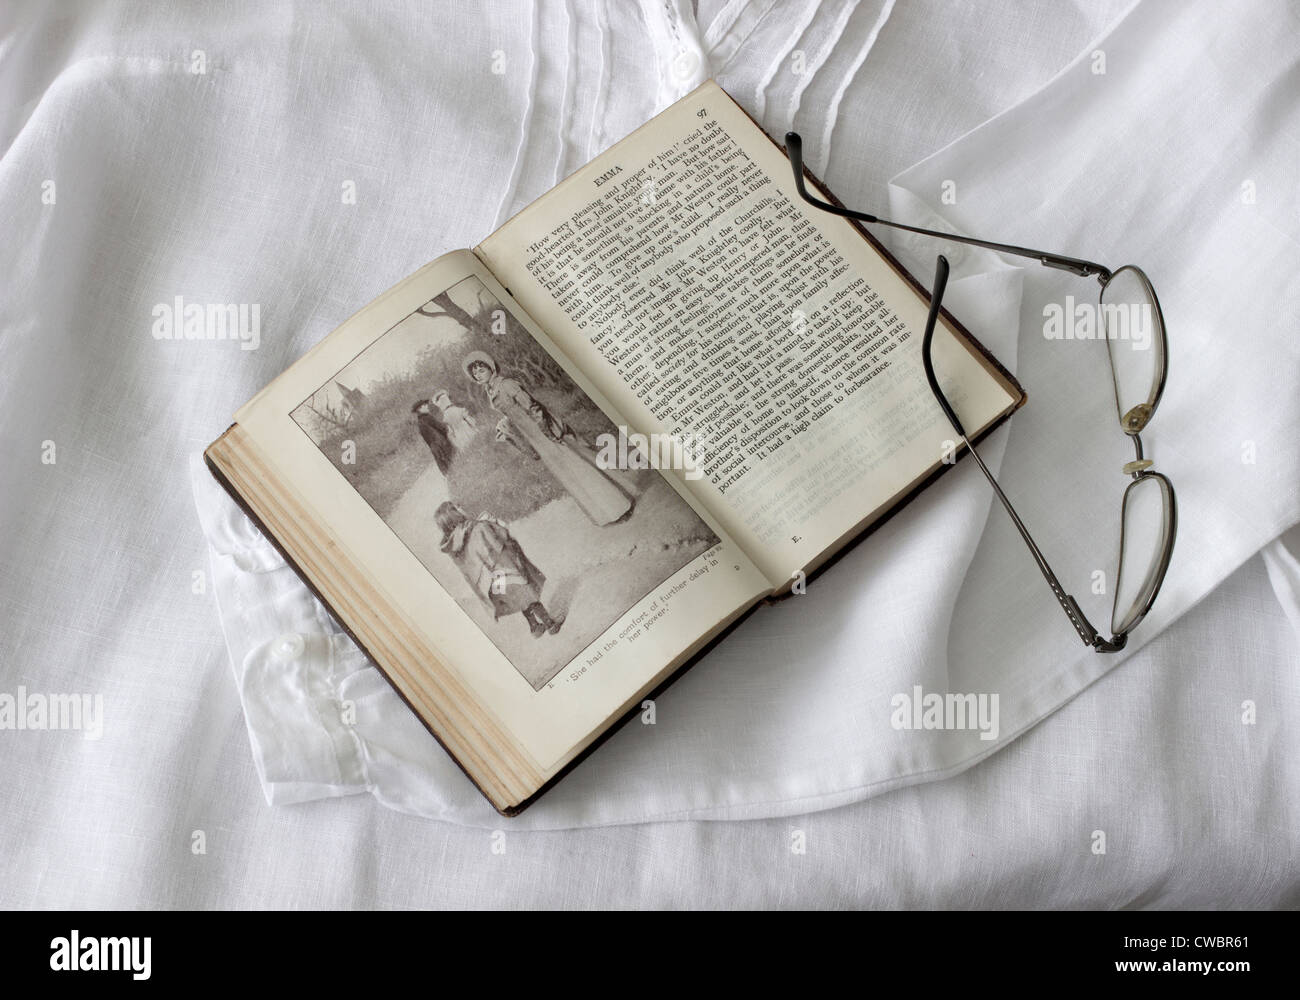 Alte Ausgabe von 'Emma' von Jane Austen auf Leinenbluse abgebildet Stockfoto